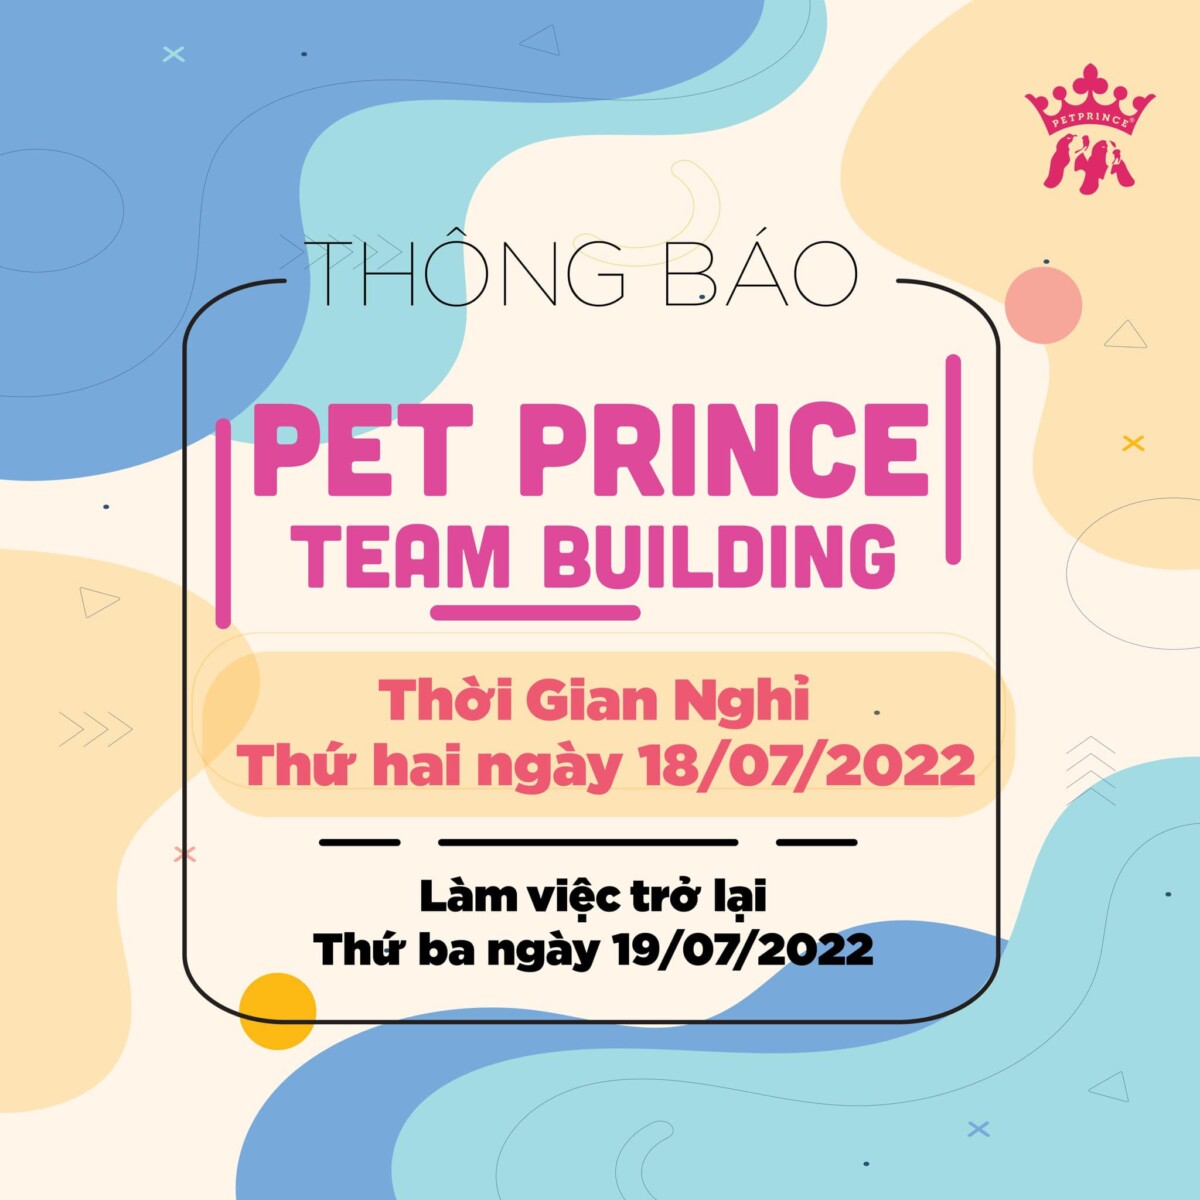 Thông báo Pet Prince Team Building